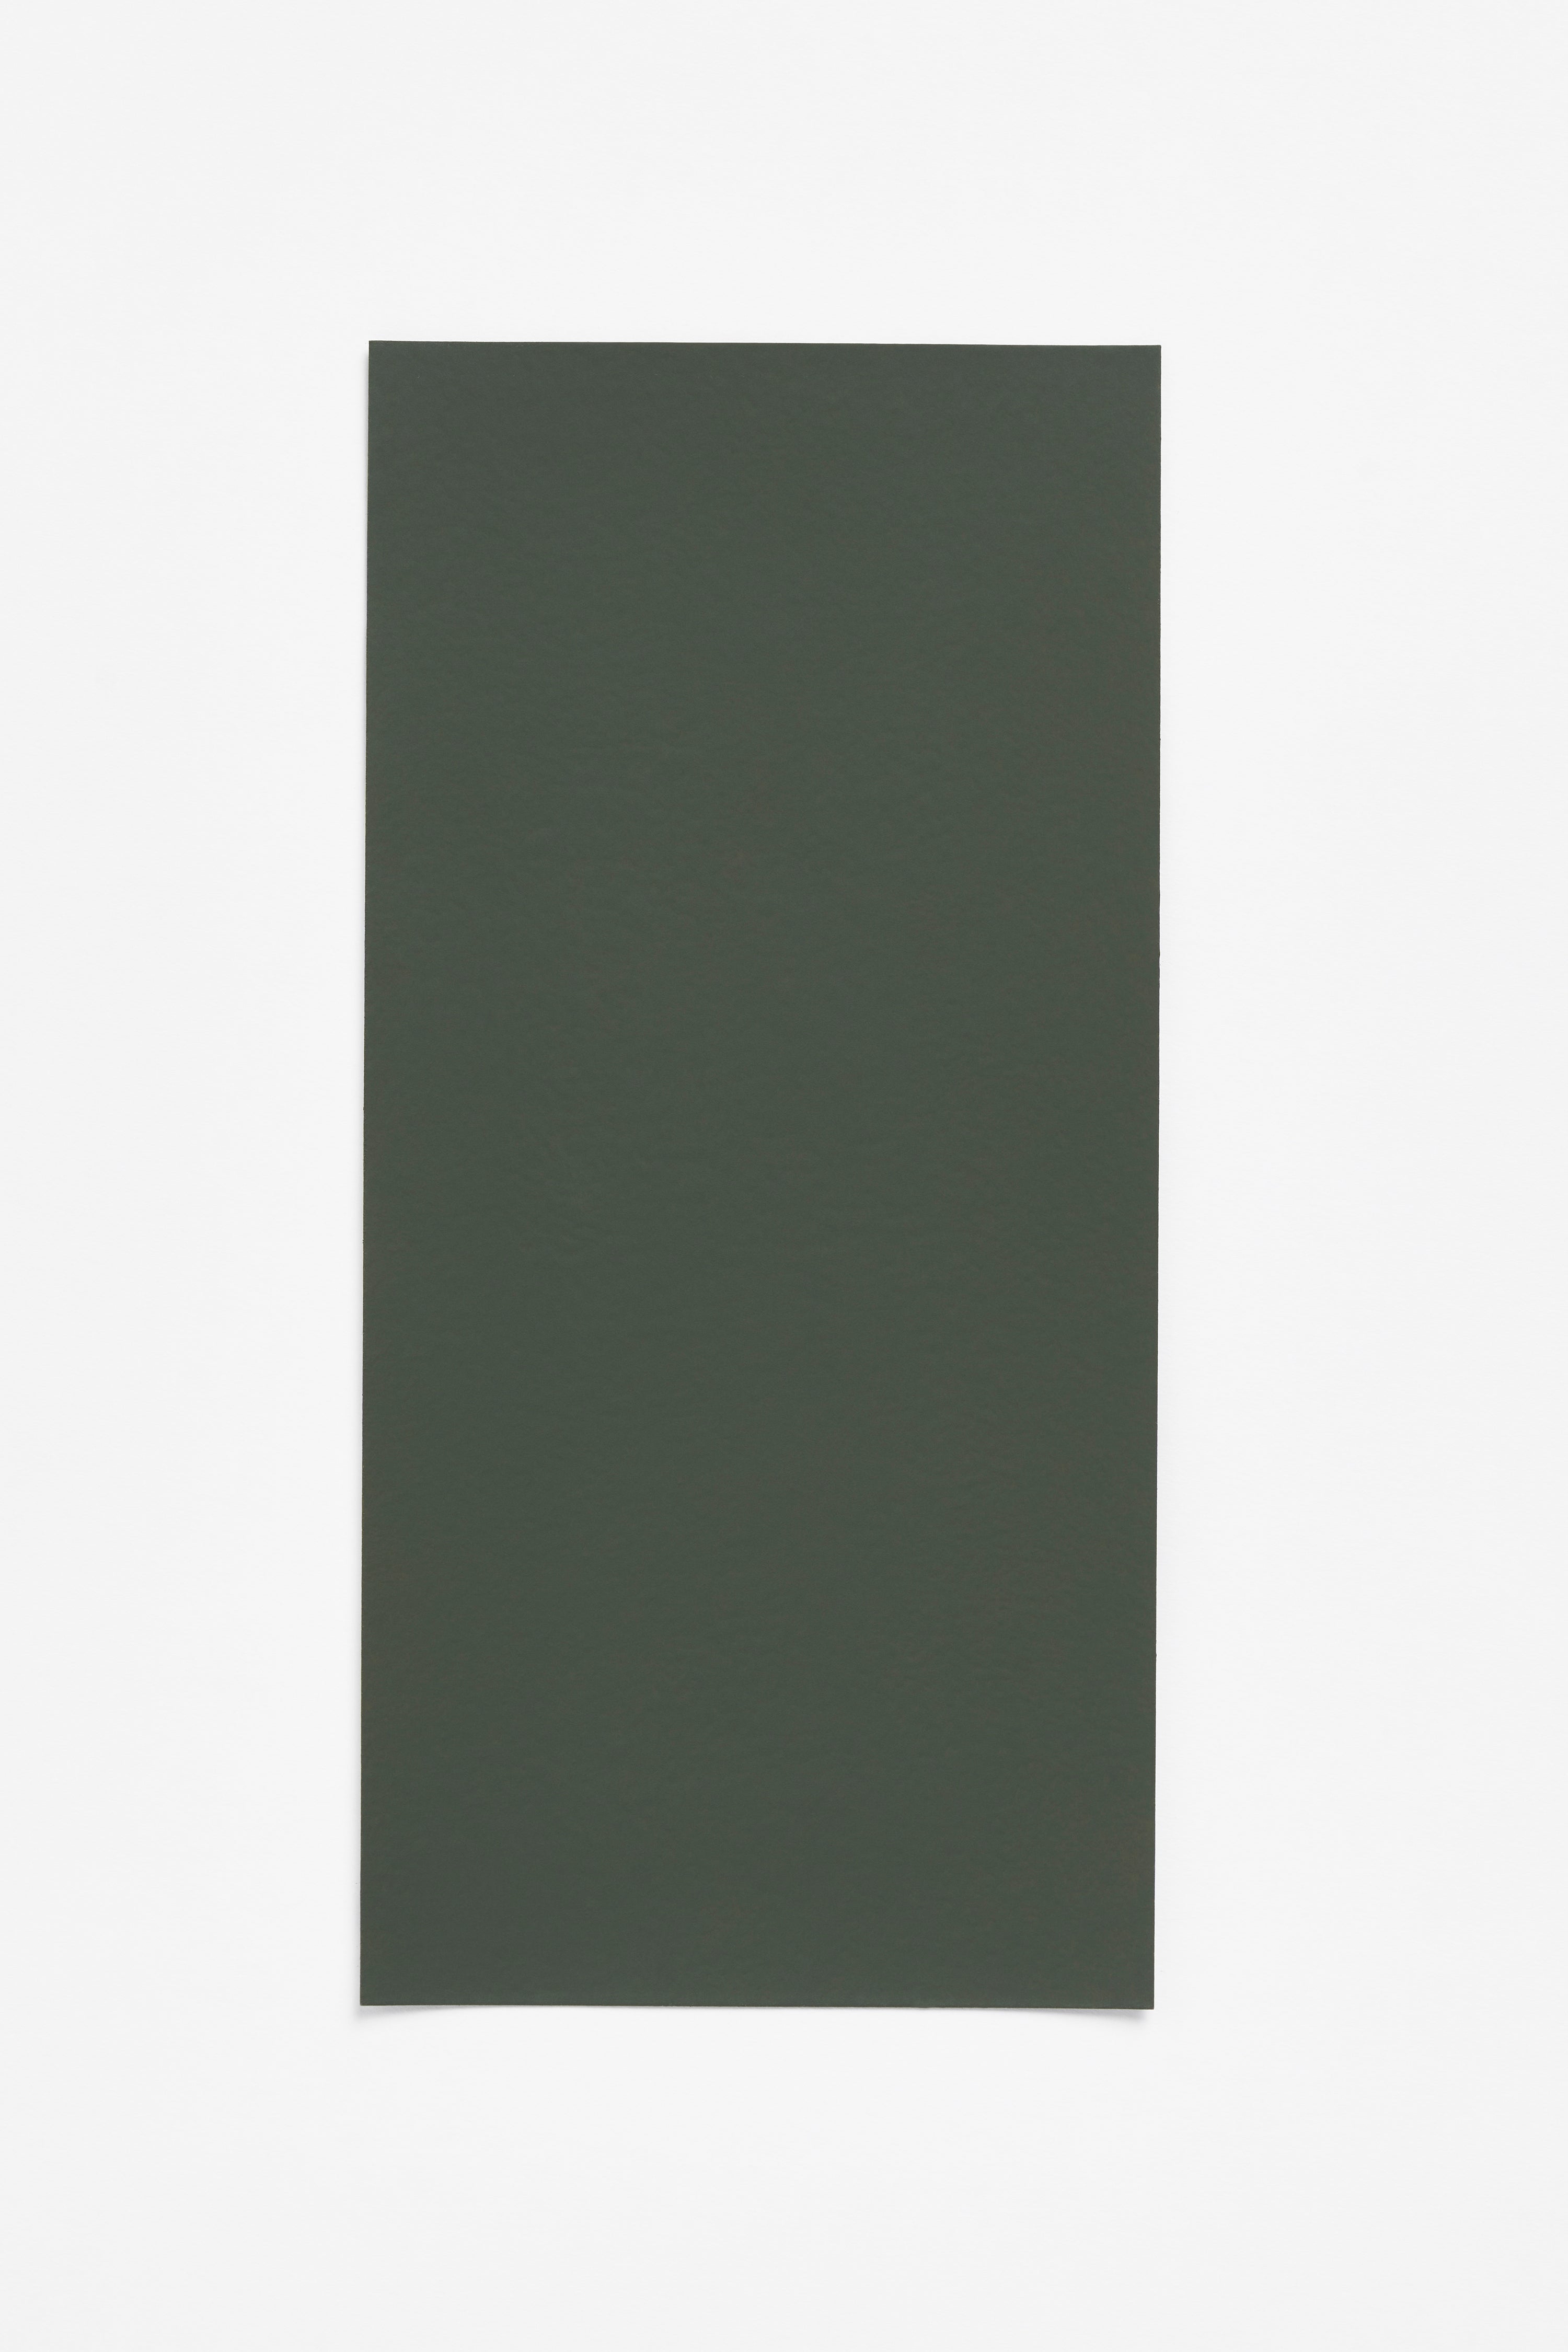 Vert Gris — a paint colour developed by Ronan Bouroullec for Blēo